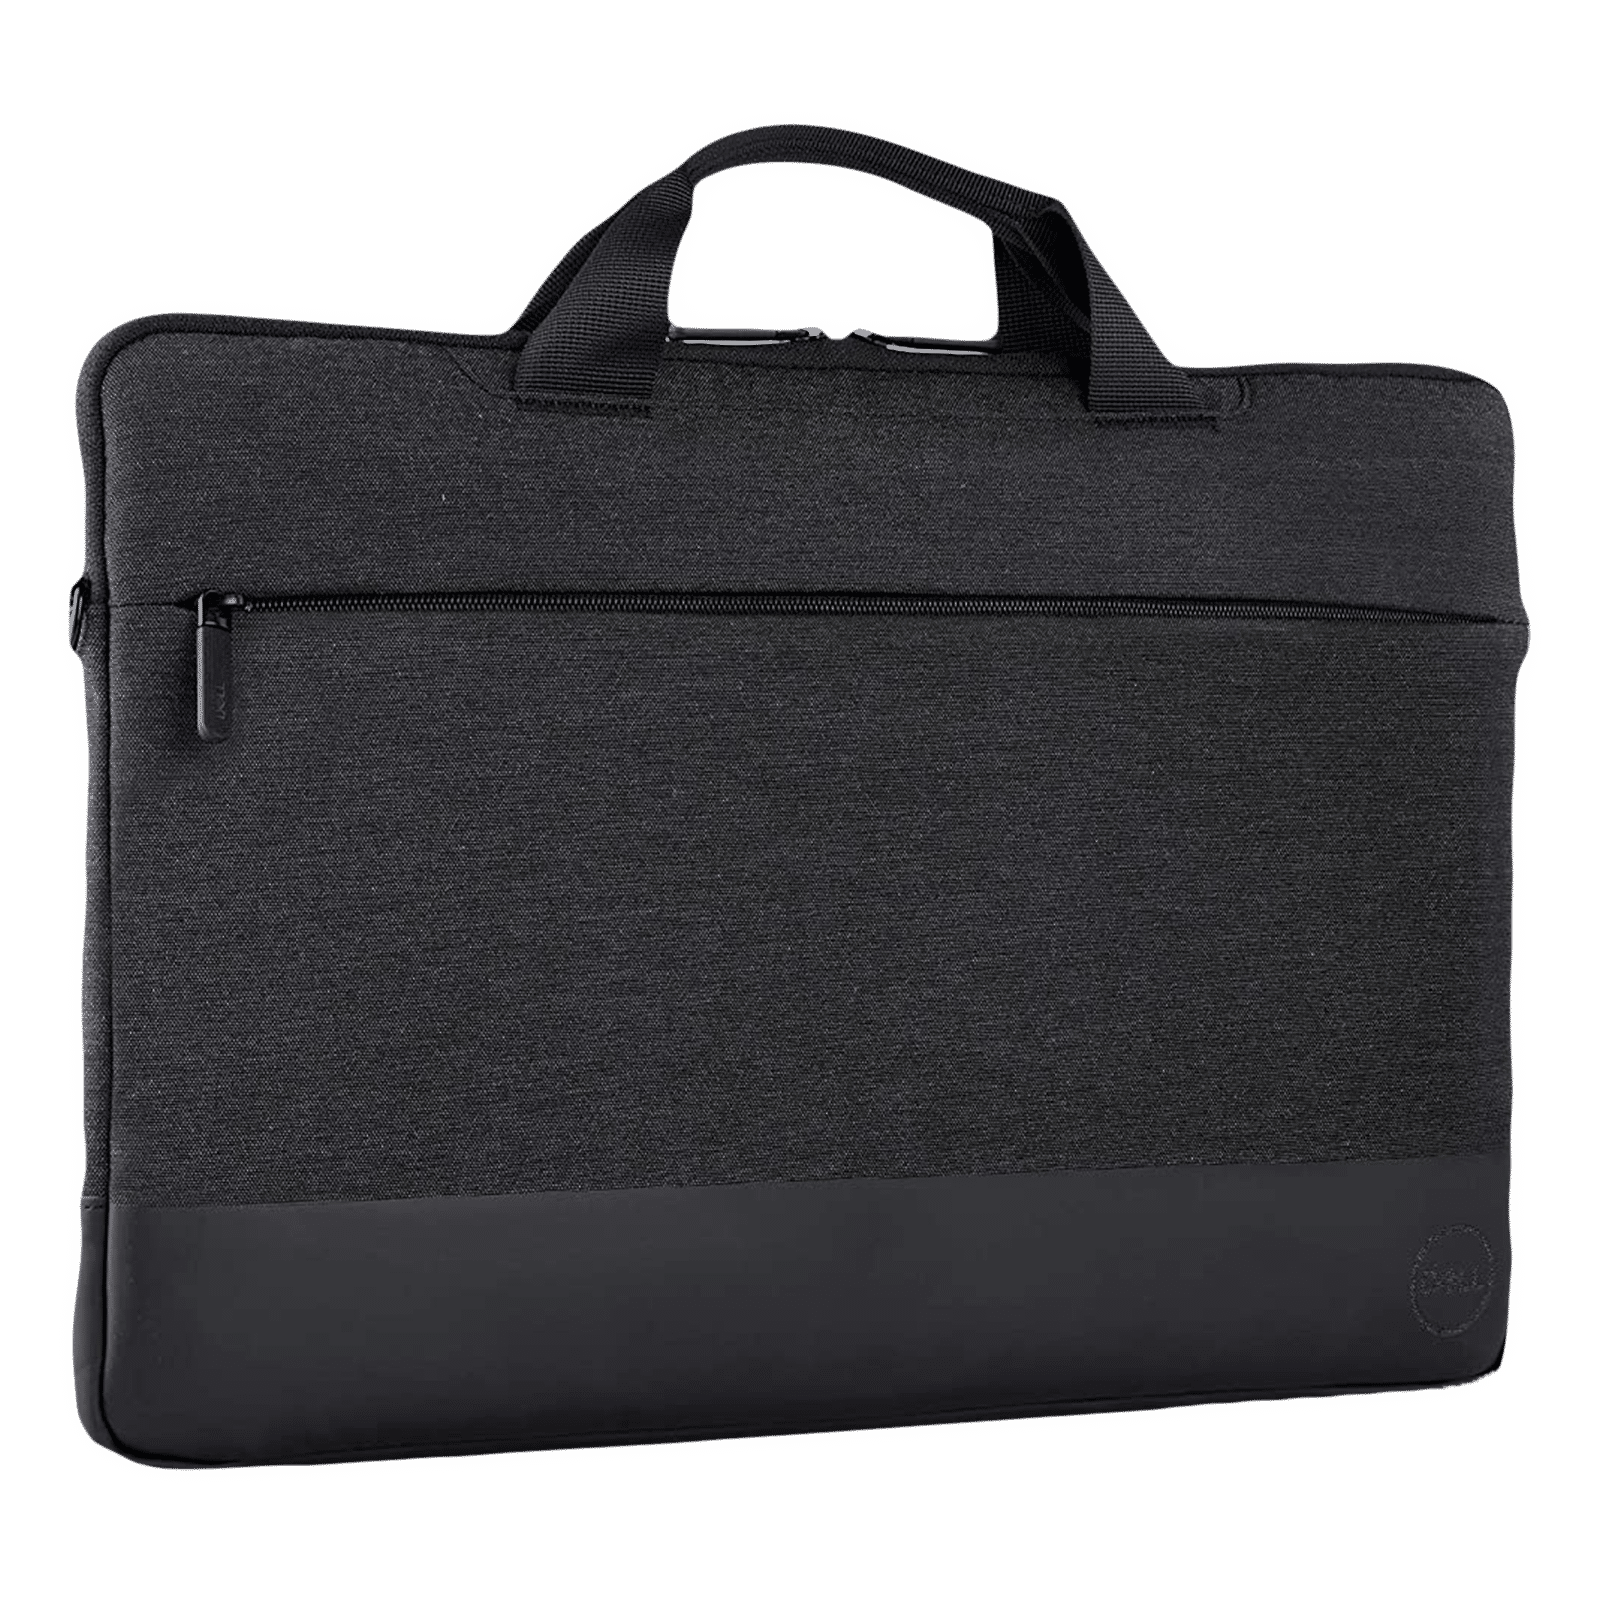 Dell Laptop Backpack - Black -15.6